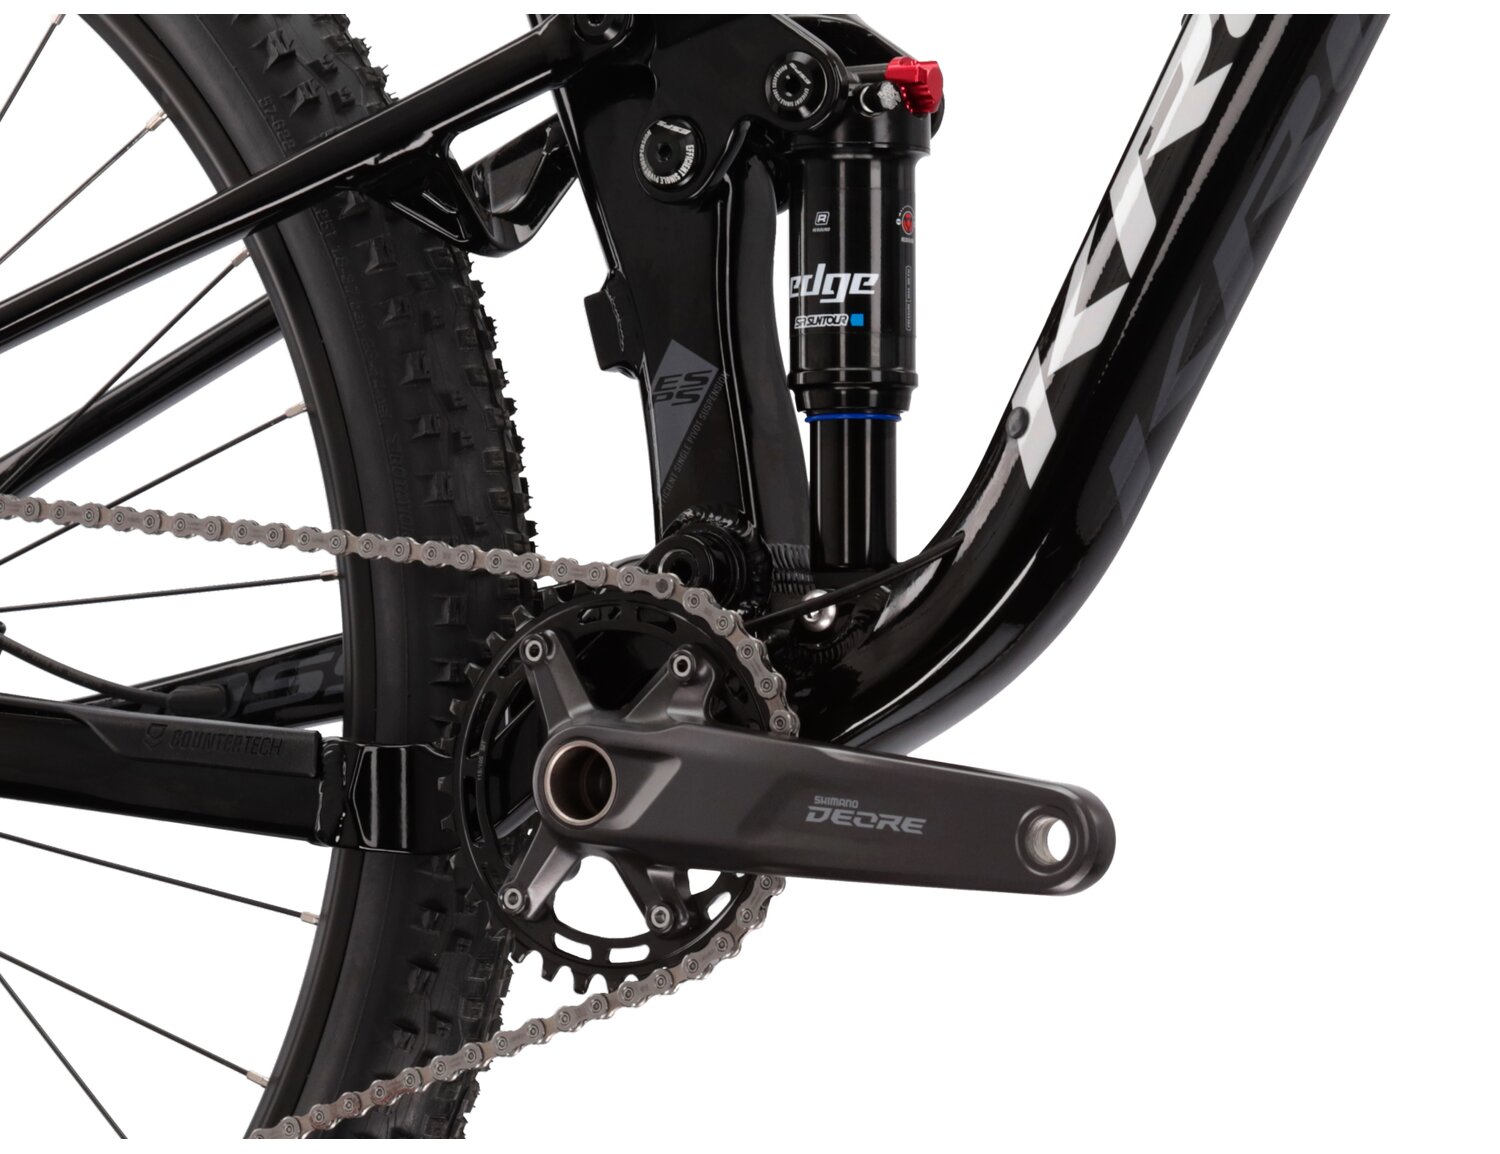  Tylny amortyzator SR Suntour Edge R oraz mechanizm korbowy Shimano Deore M5100 w rowerze górskim MTB XC KROSS Earth 1.0 